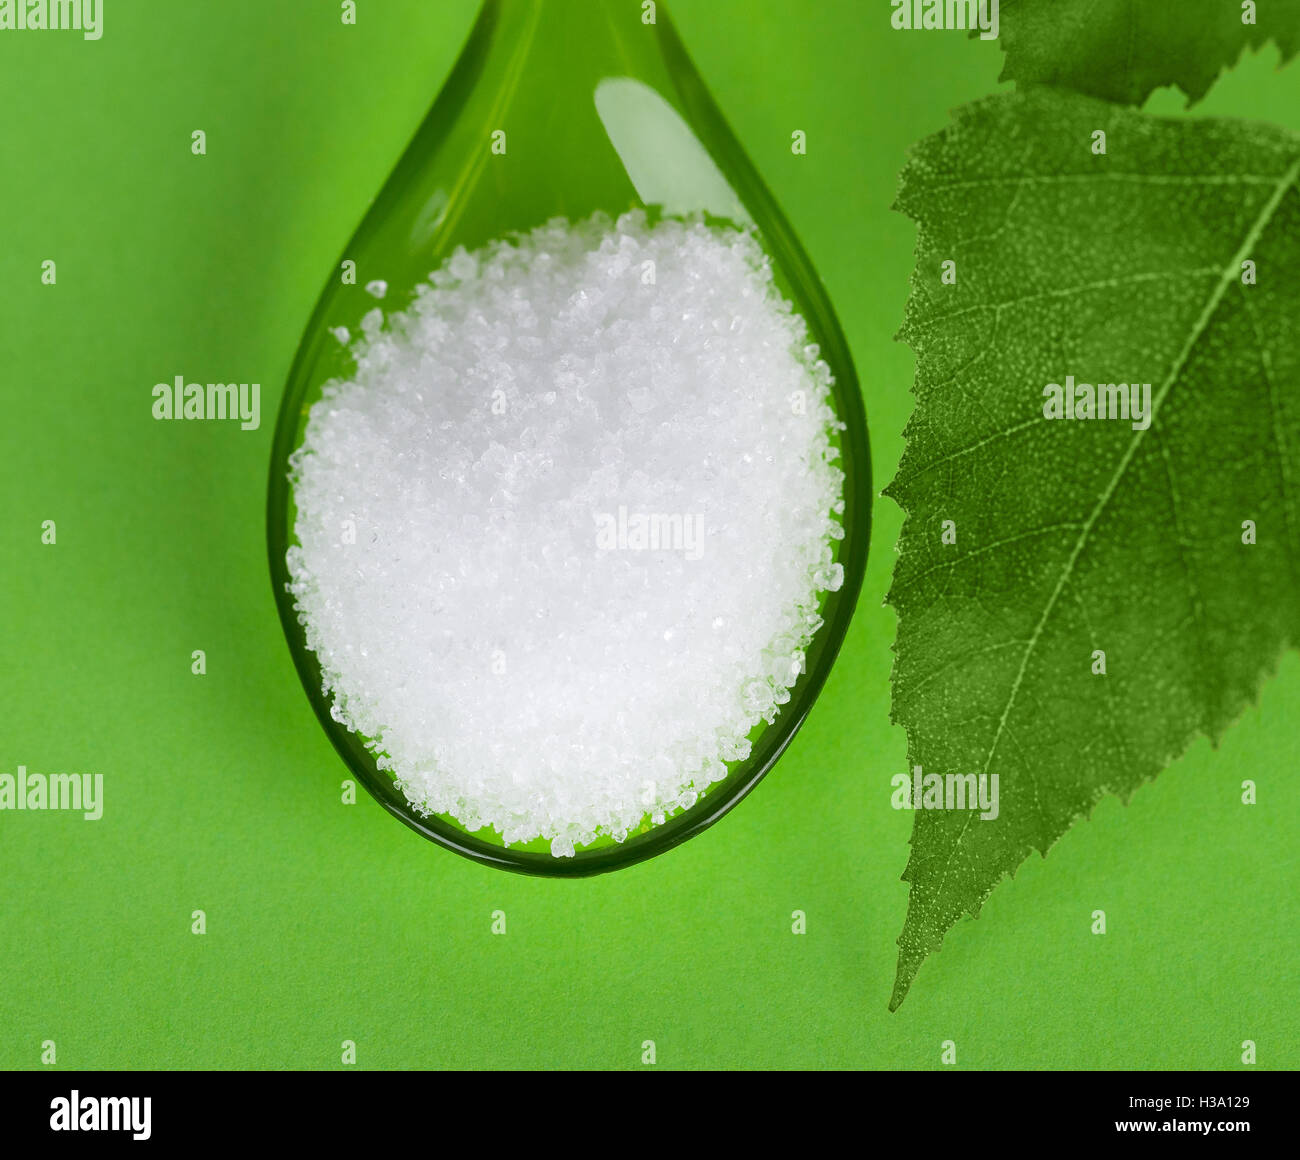 Xylitol Birkenzucker auf Plastiklöffel mit Birke Blätter auf grünem Hintergrund. Weißen granulierten Zucker-Alkohol-Ersatz. Stockfoto